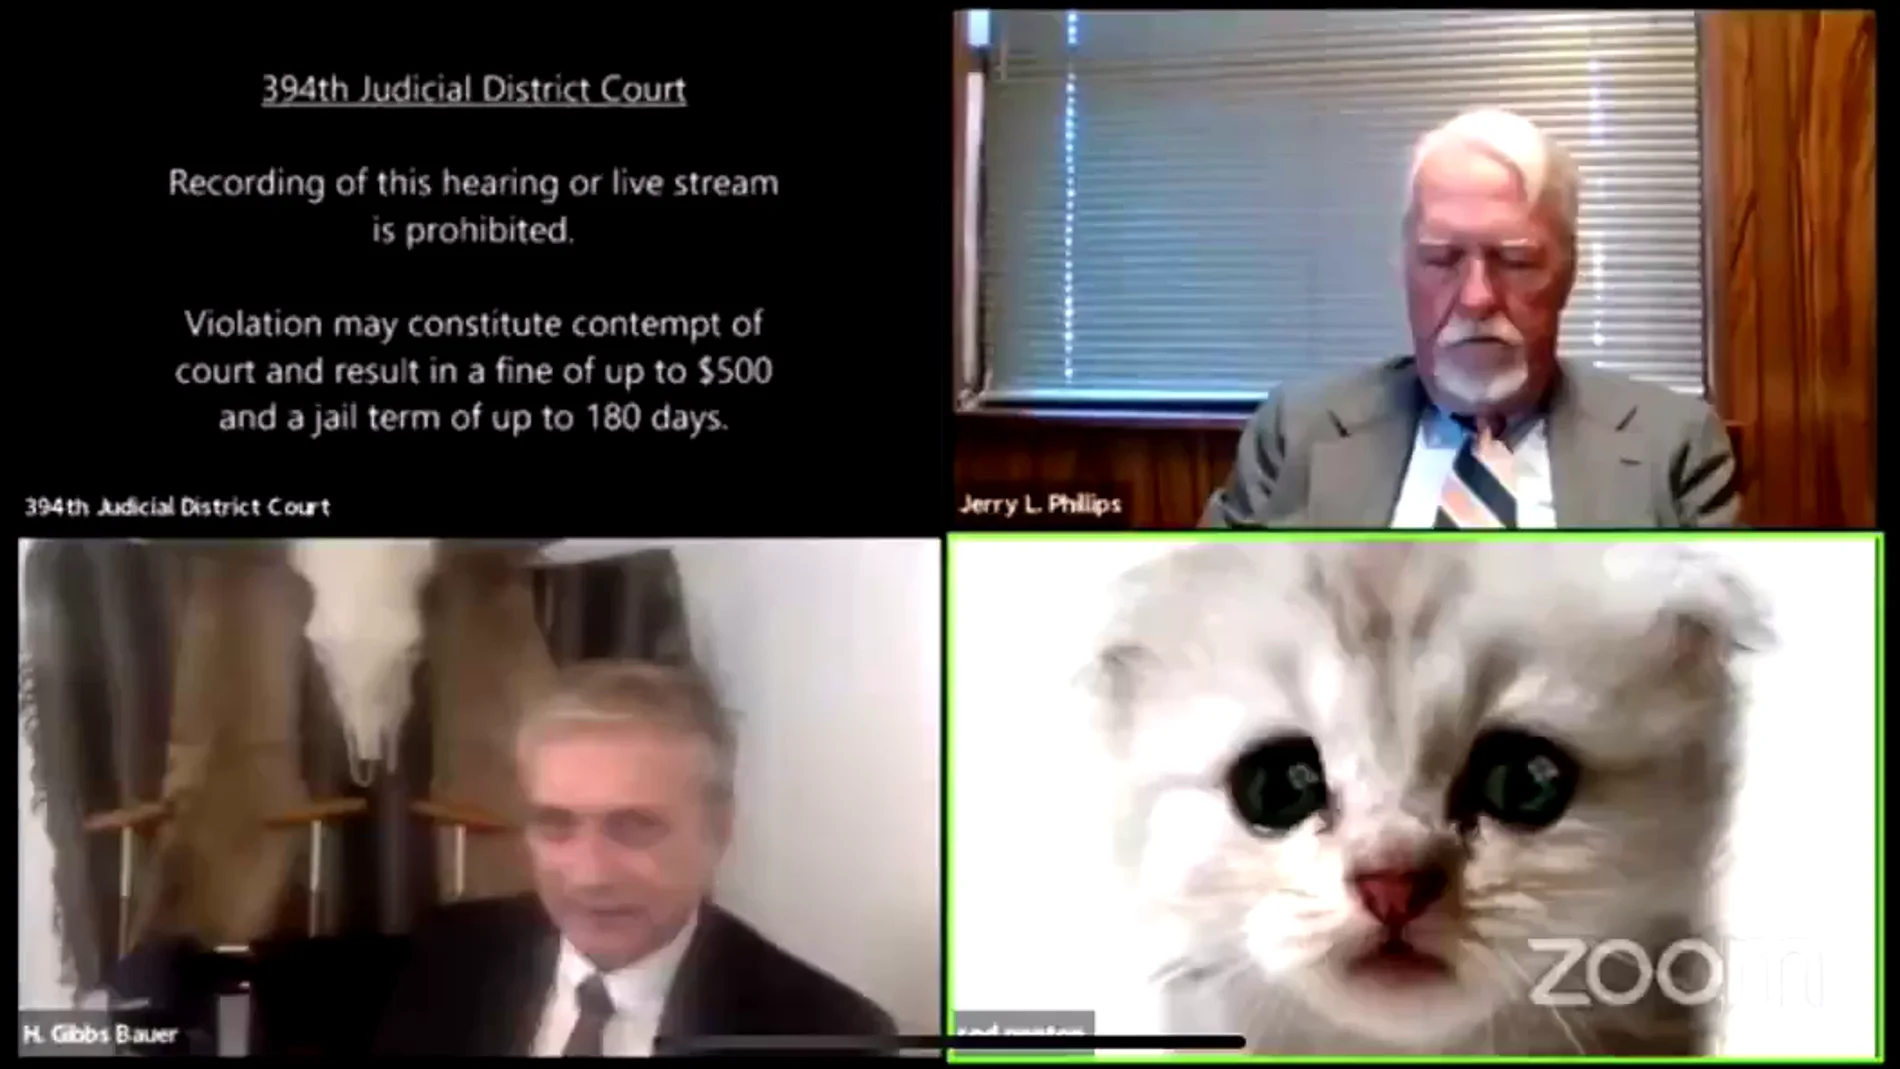 "No soy un gato": el filtro que jugó una mala pasada a un abogado durante un juicio online